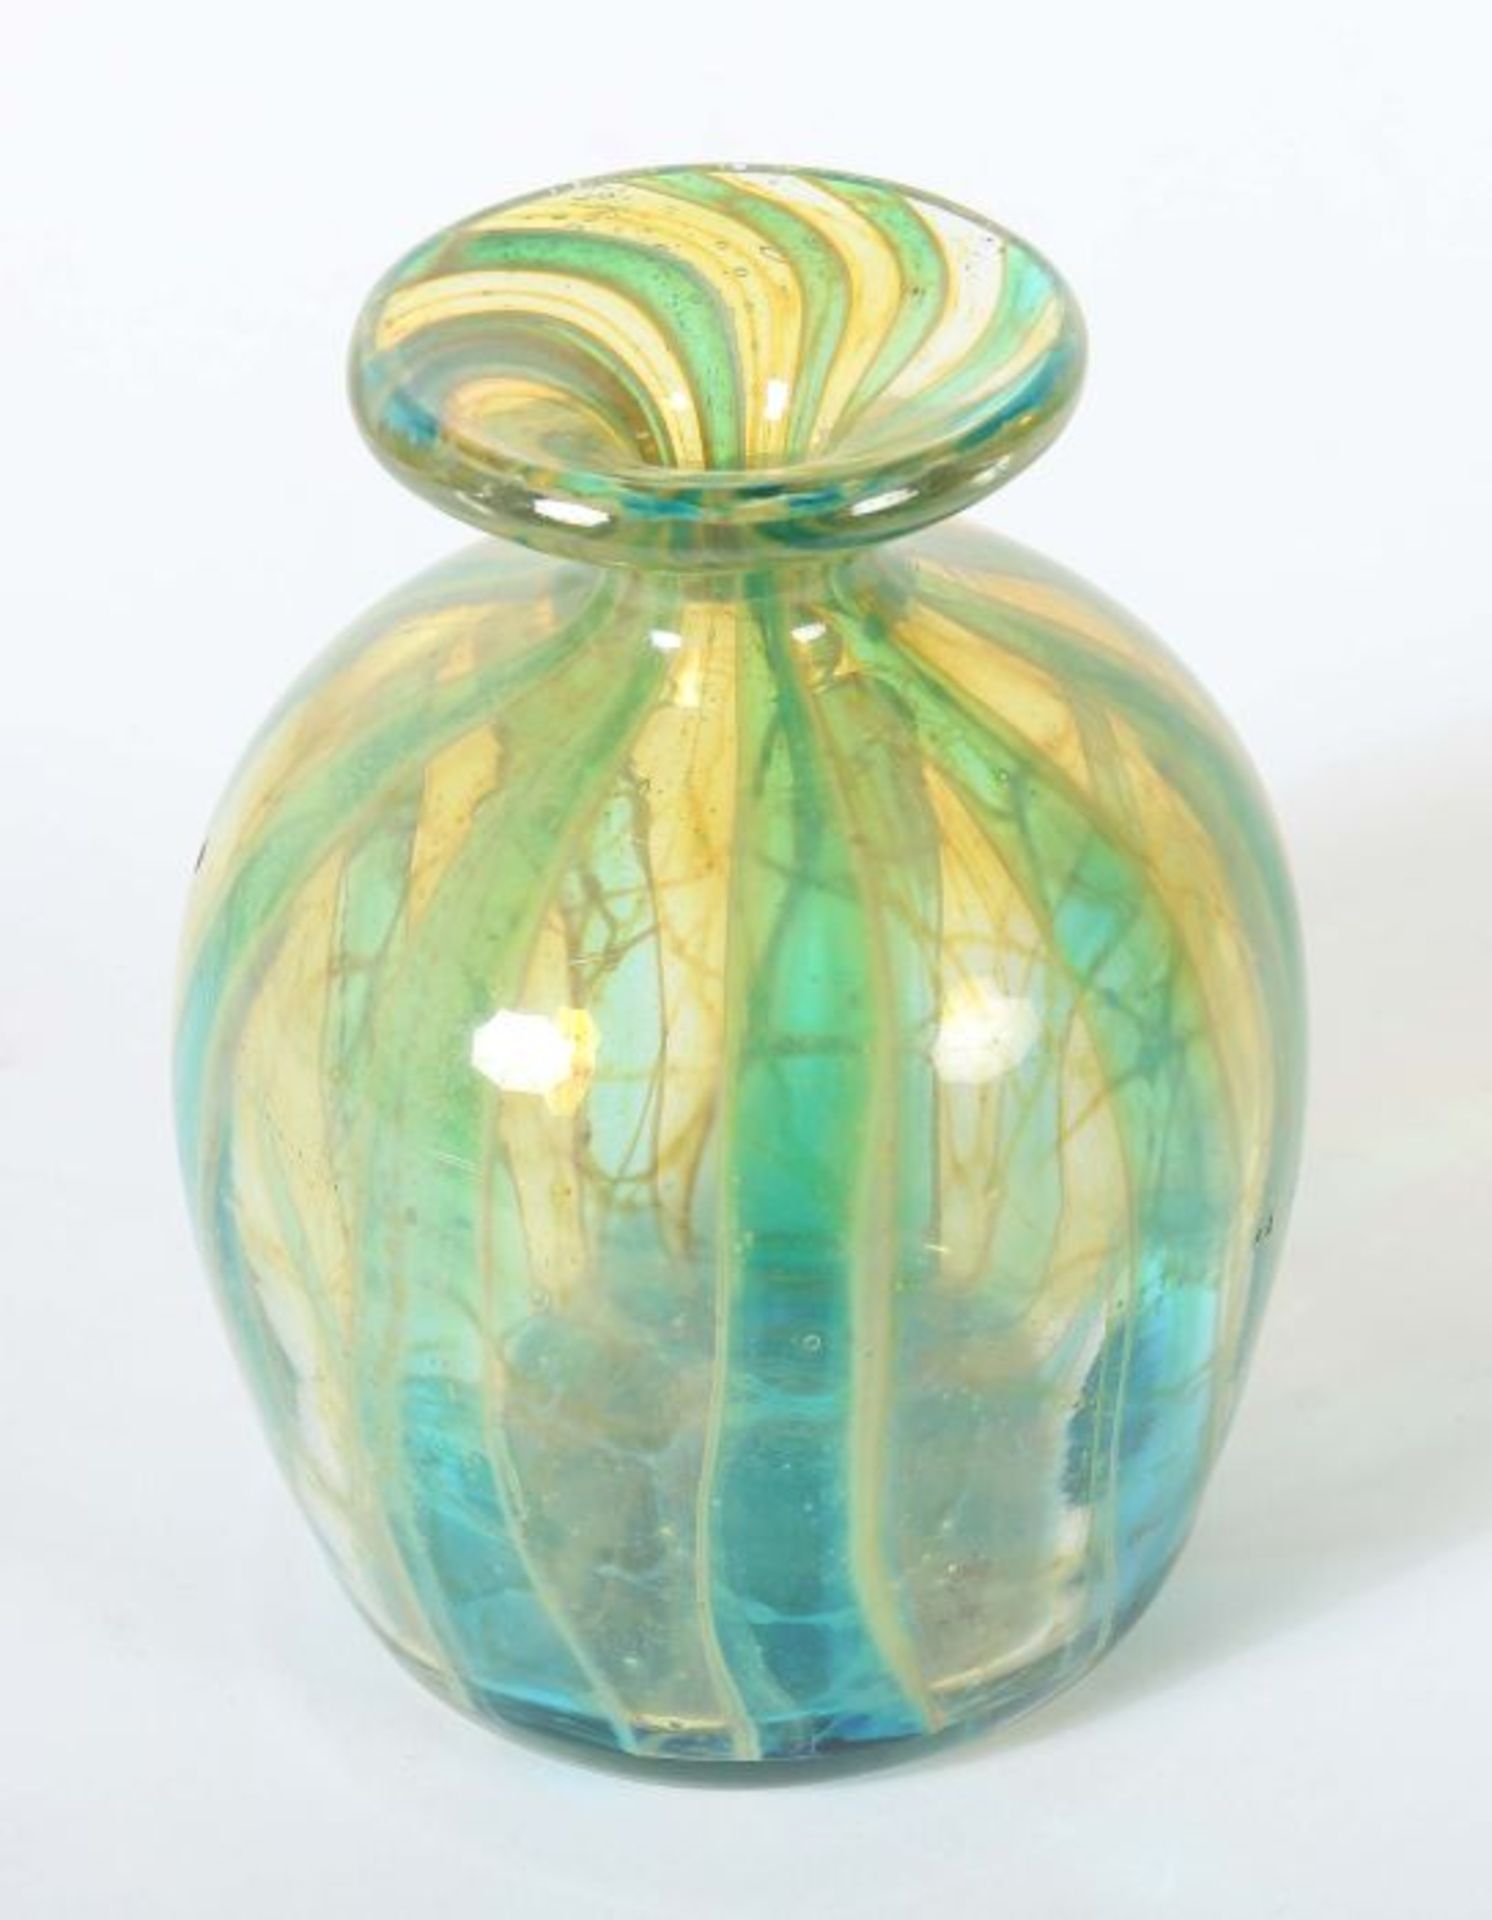 Vase Mdina, Malta, 20. Jh., farbloses Glas, formgeblasen, Einschmelzungen in hellen Blau-, Grün- - Bild 2 aus 2